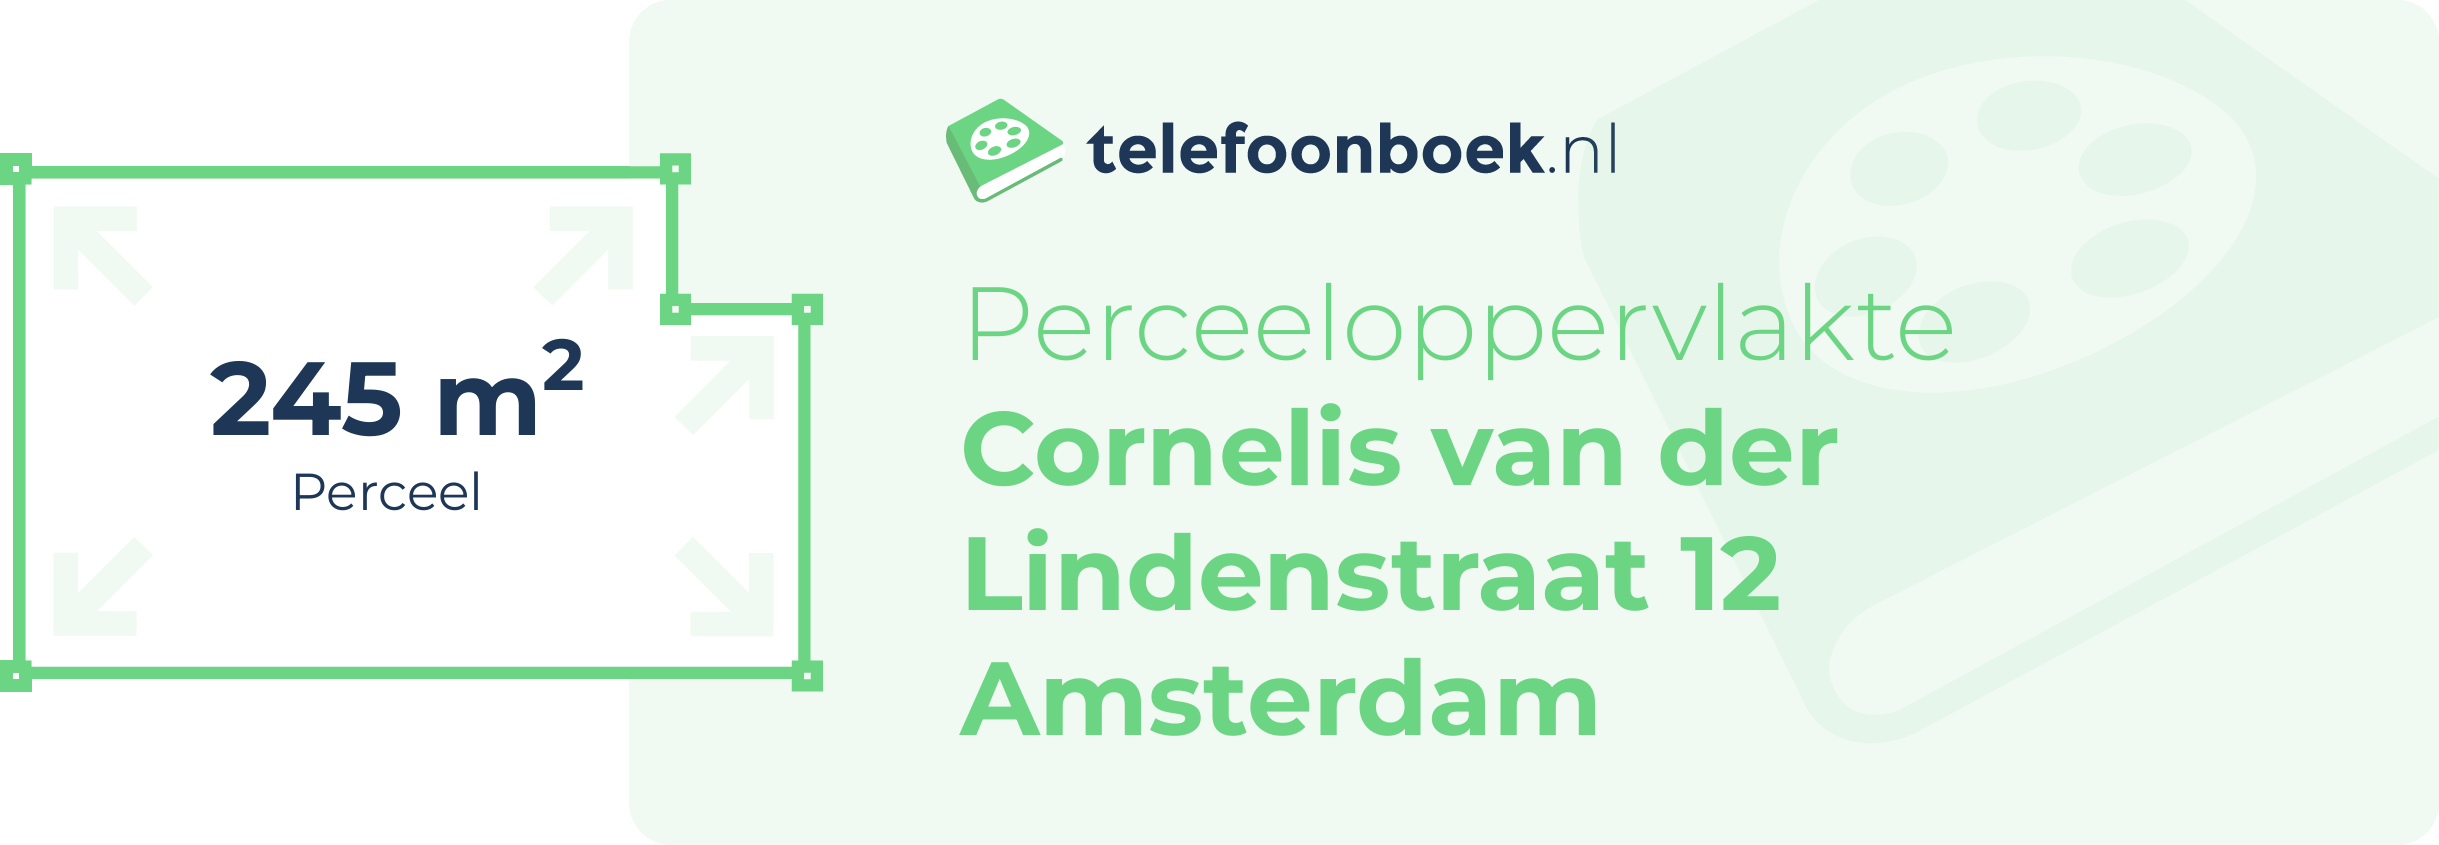 Perceeloppervlakte Cornelis Van Der Lindenstraat 12 Amsterdam